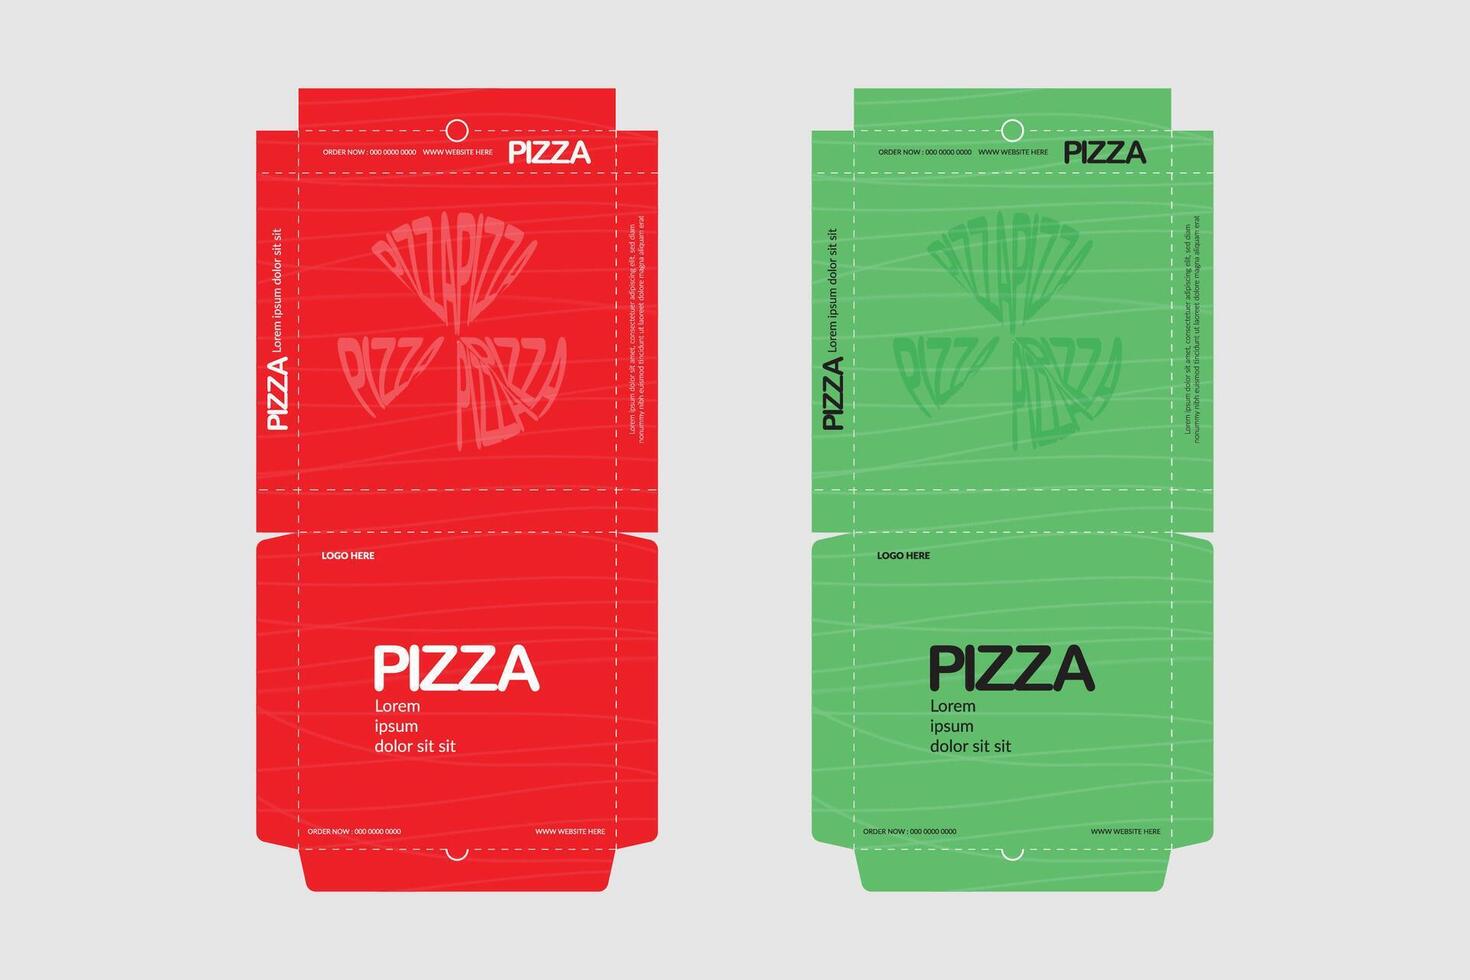 Pizza scatola disegno, Pizza confezione disegno, Pizza scatola ddesign modelli, schizzo scatola disegno, Pizza realistico cartone scatola vettore